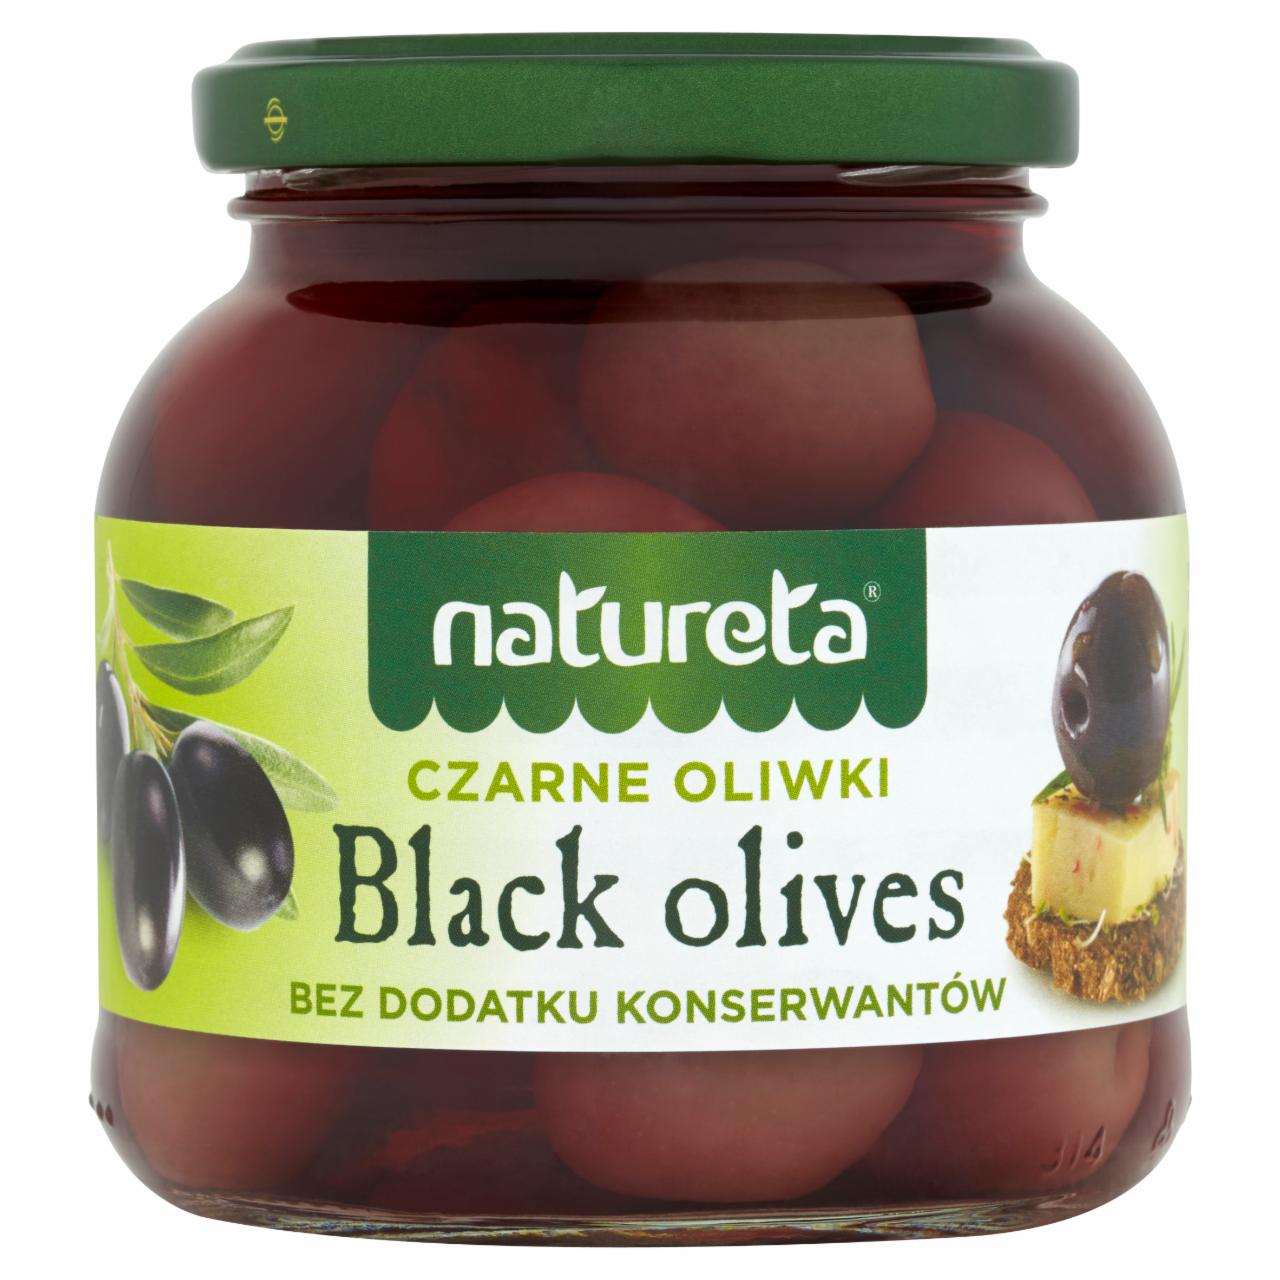 Zdjęcia - Natureta Czarne oliwki z pestką 290 g